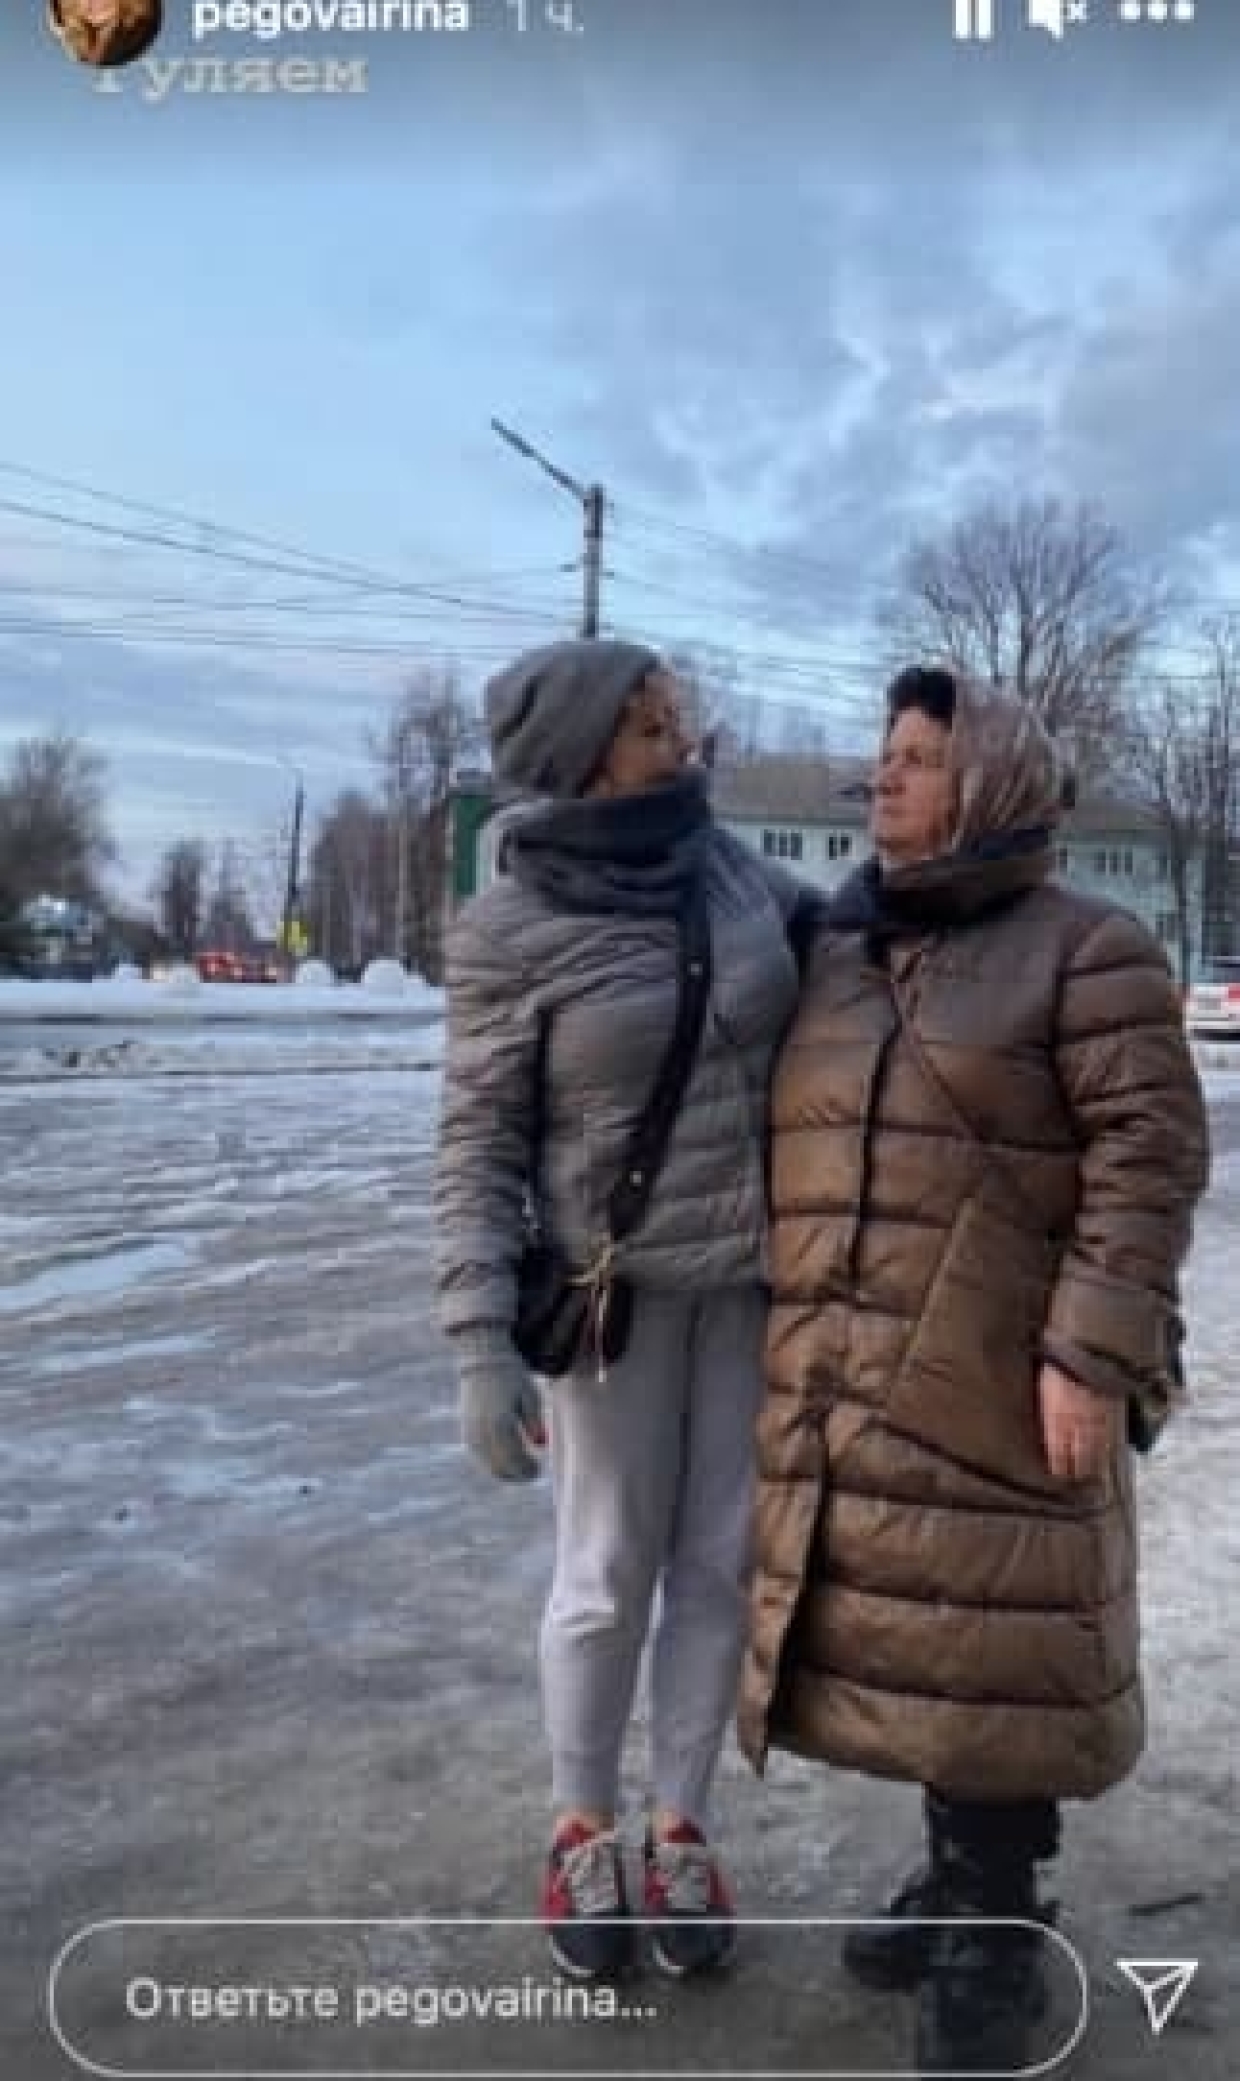 Постройневшая Ирина Пегова в монохромном образе отметилась на прогулке с мамой